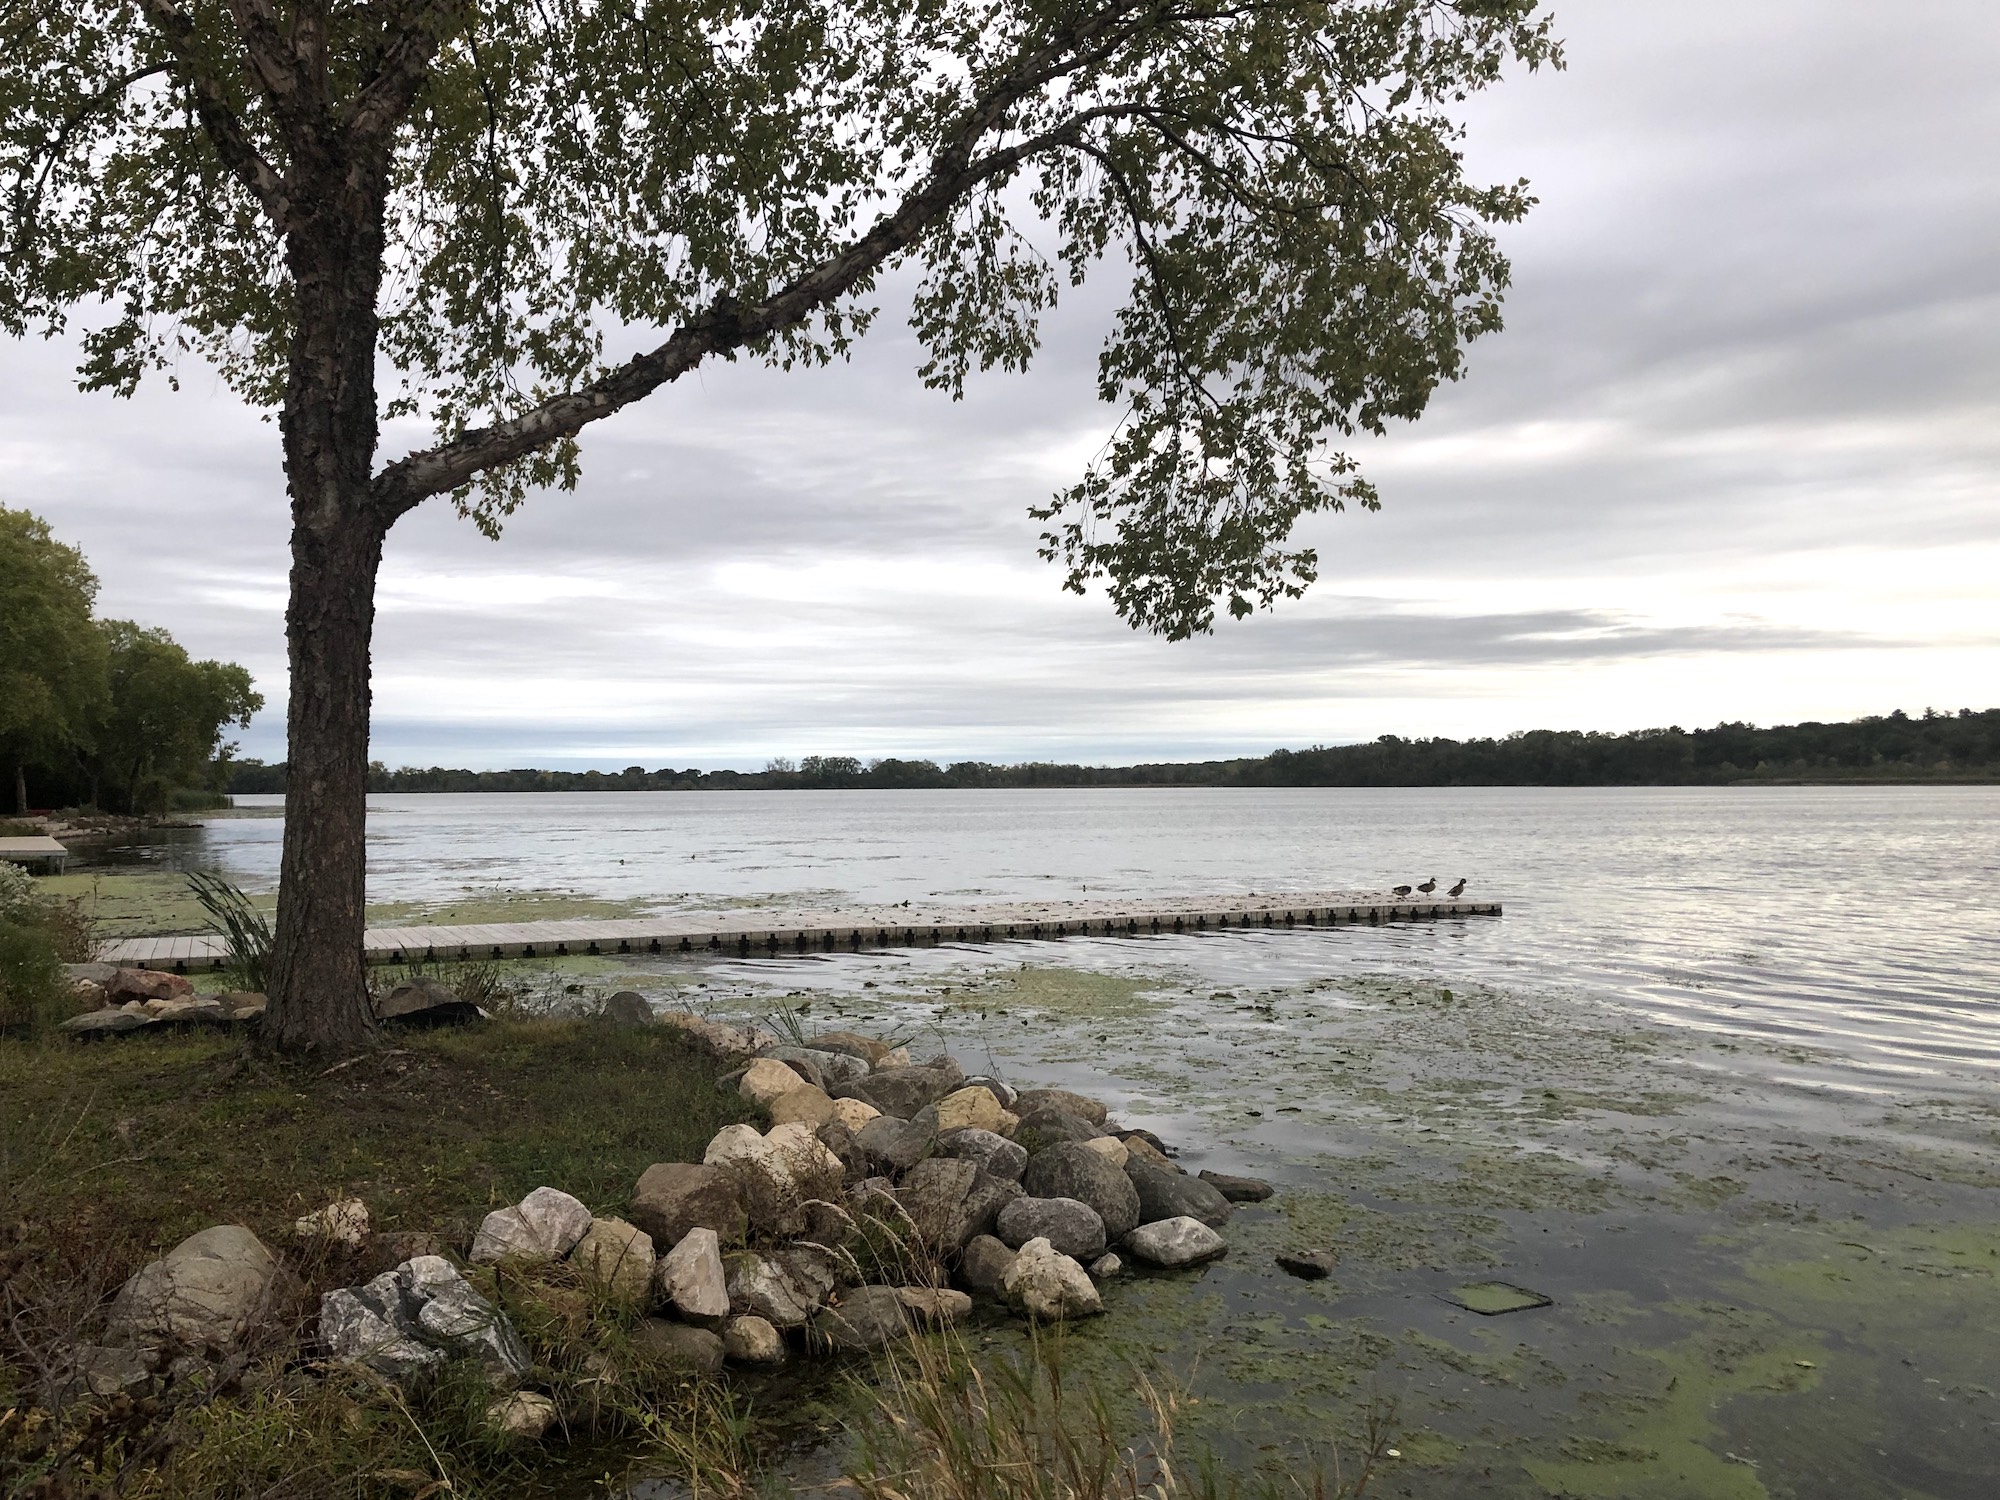 Lake Wingra on September 27, 2019.